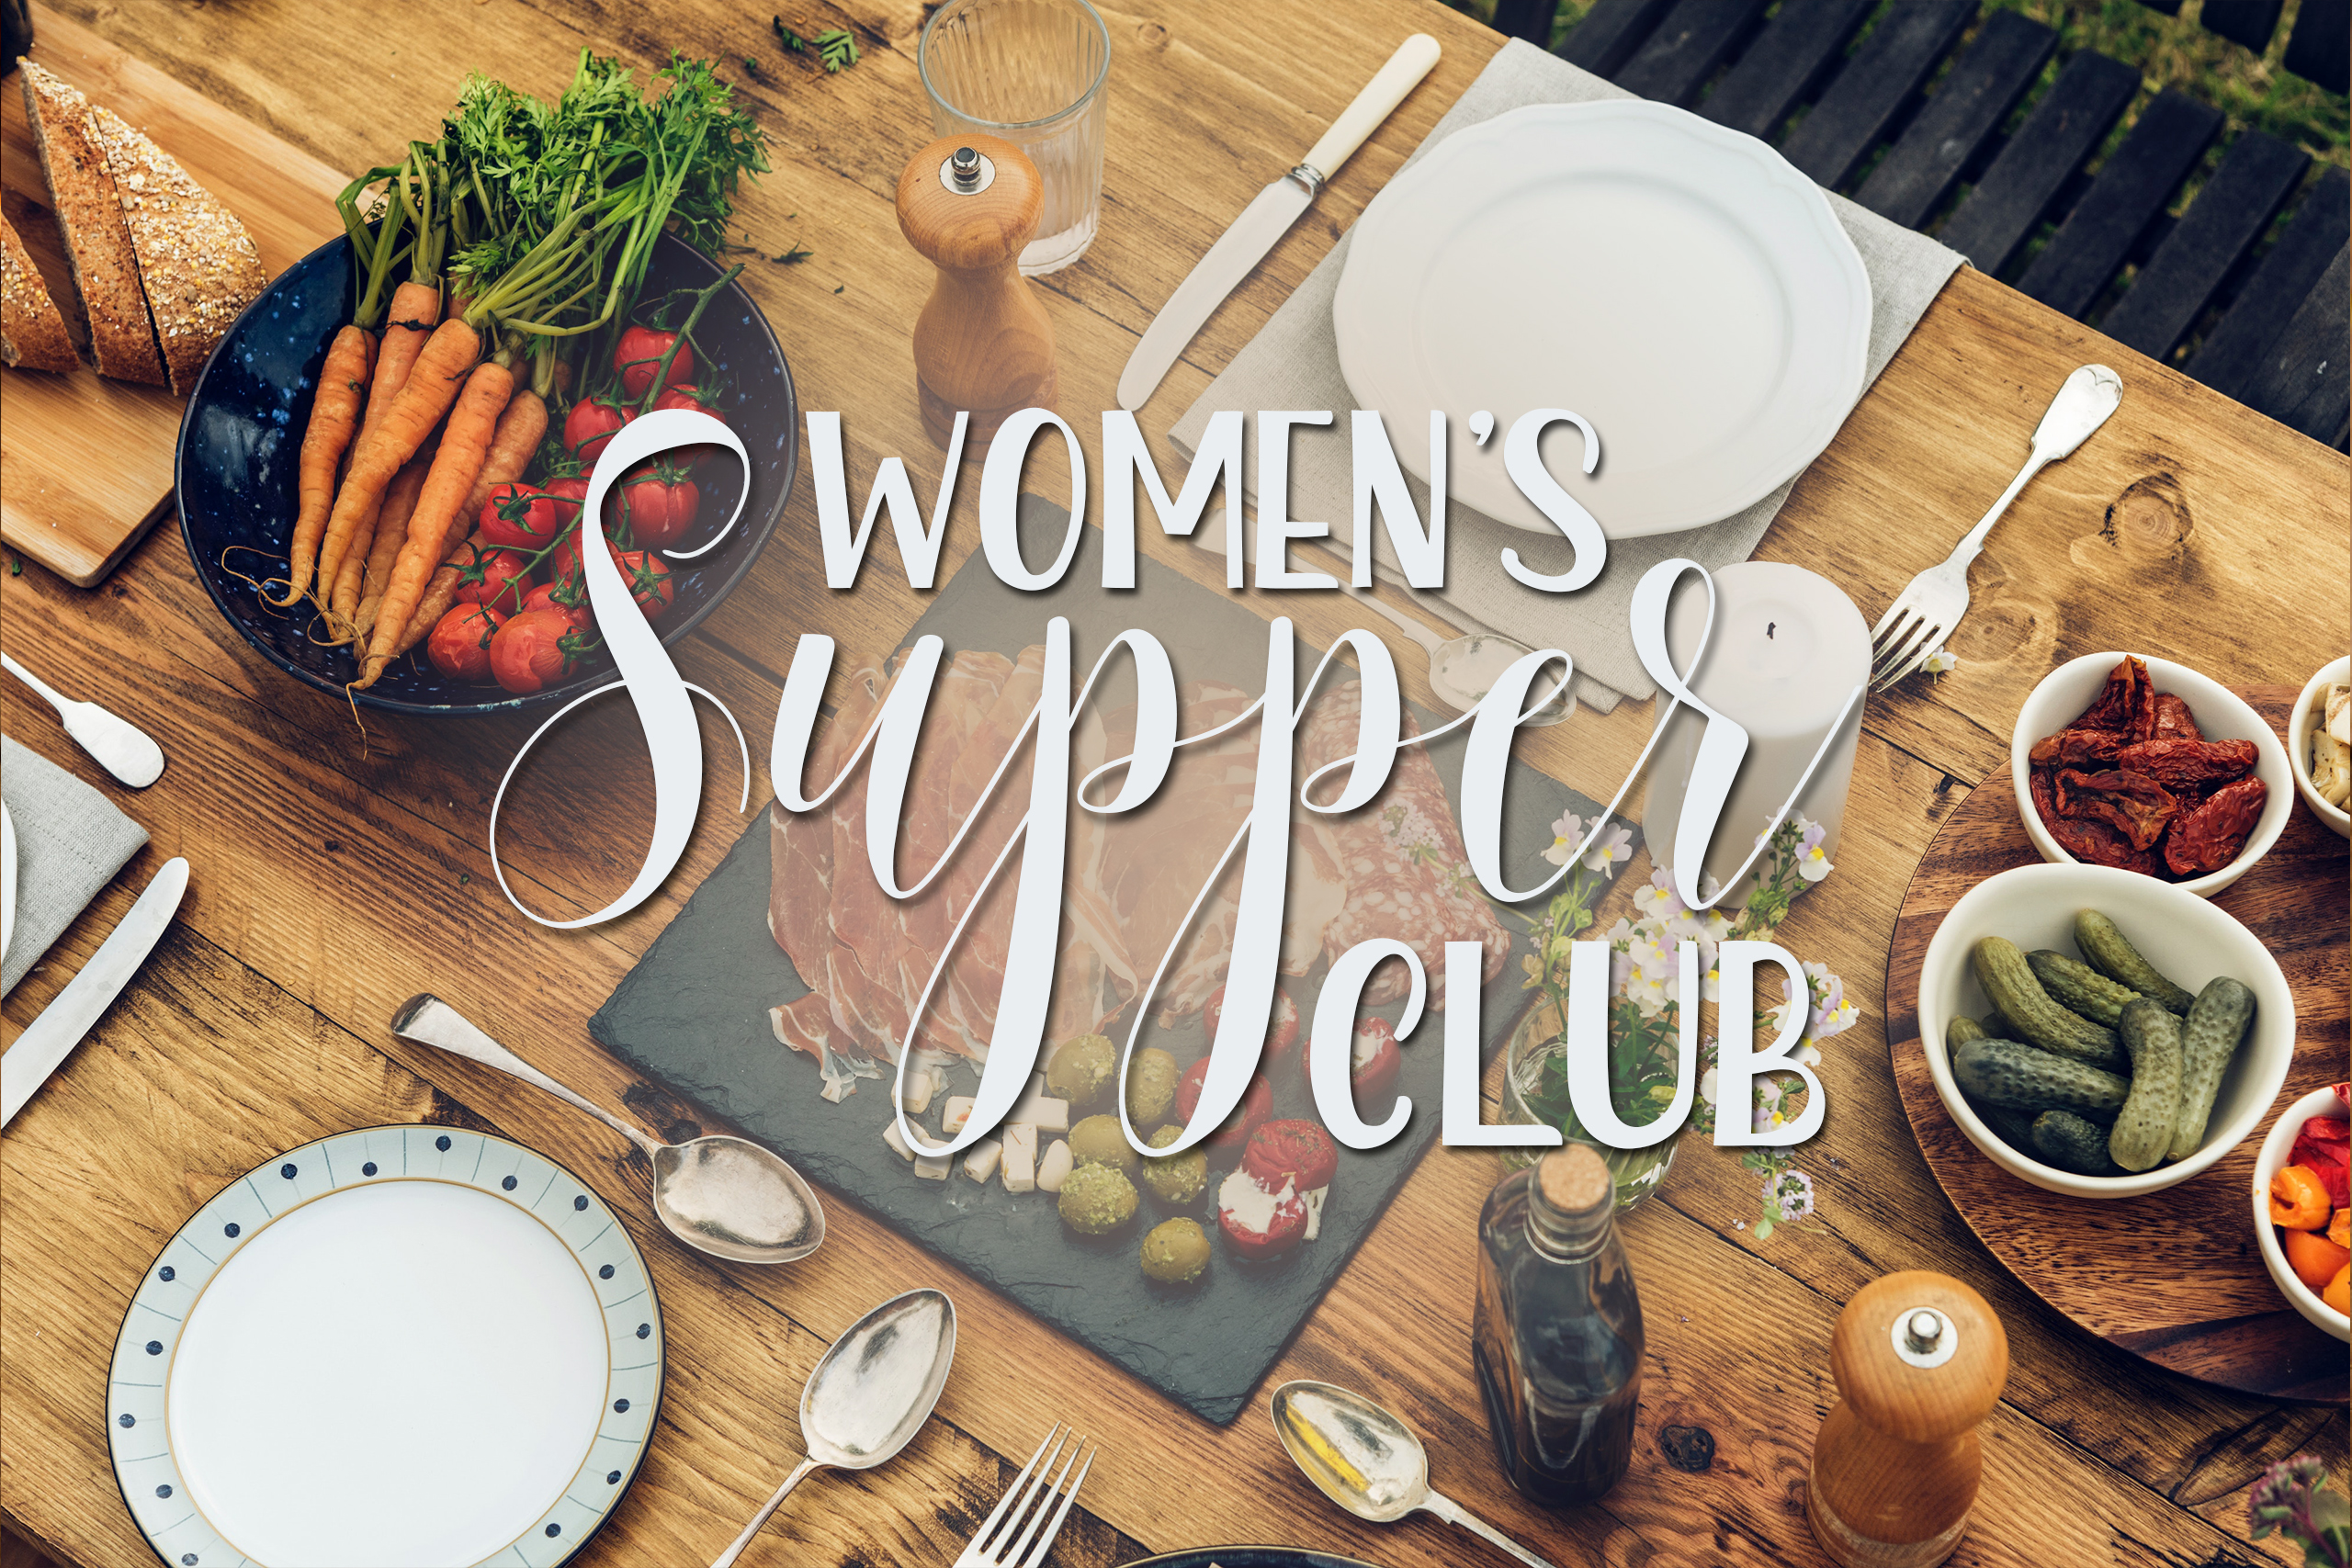 Supper Club October 25, 2019